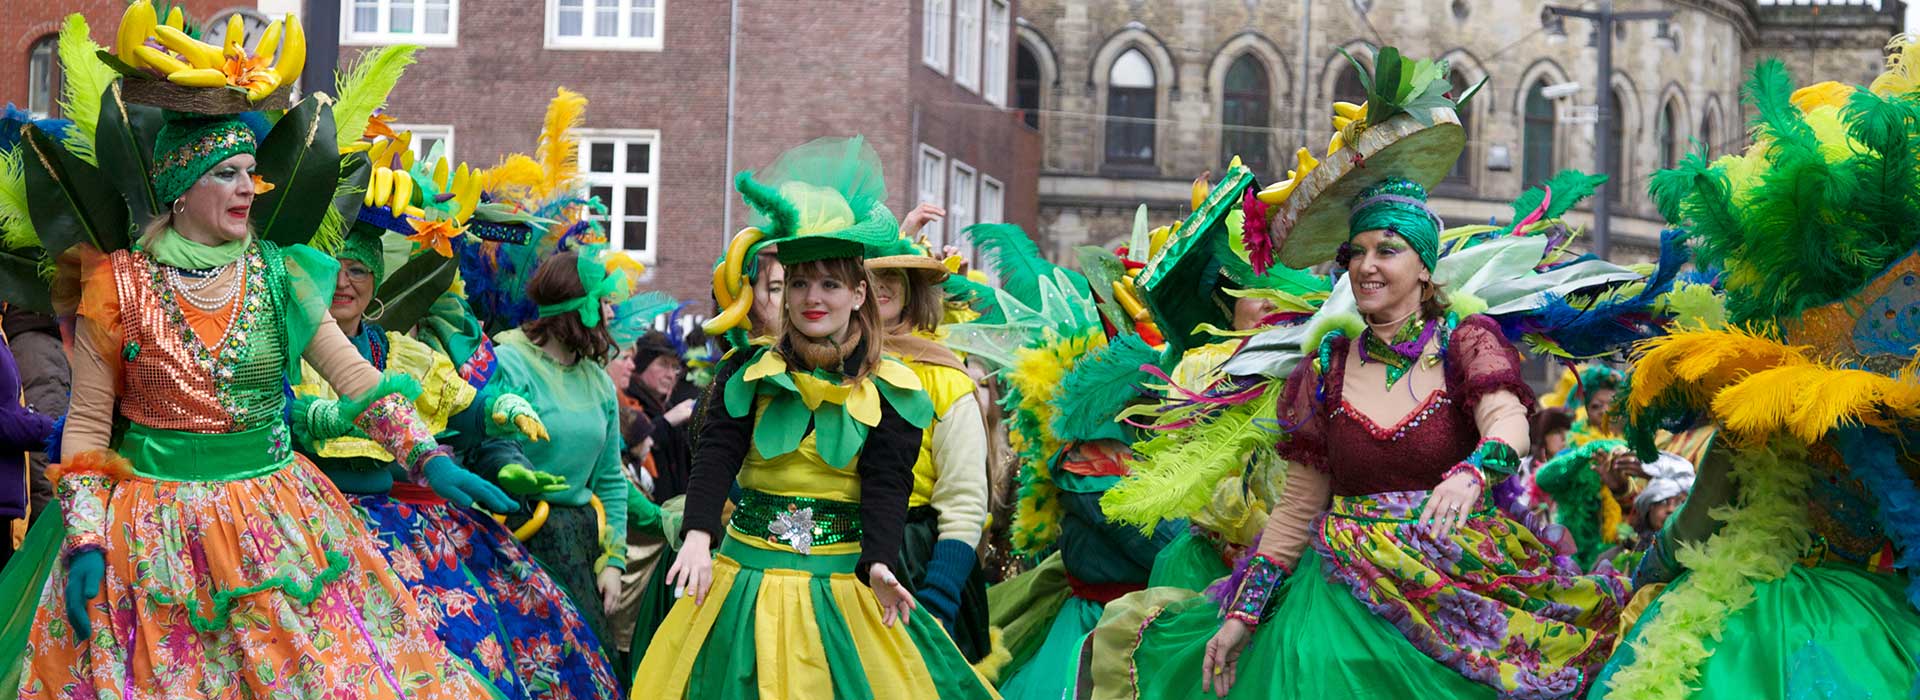 Bremer Karneval 2013